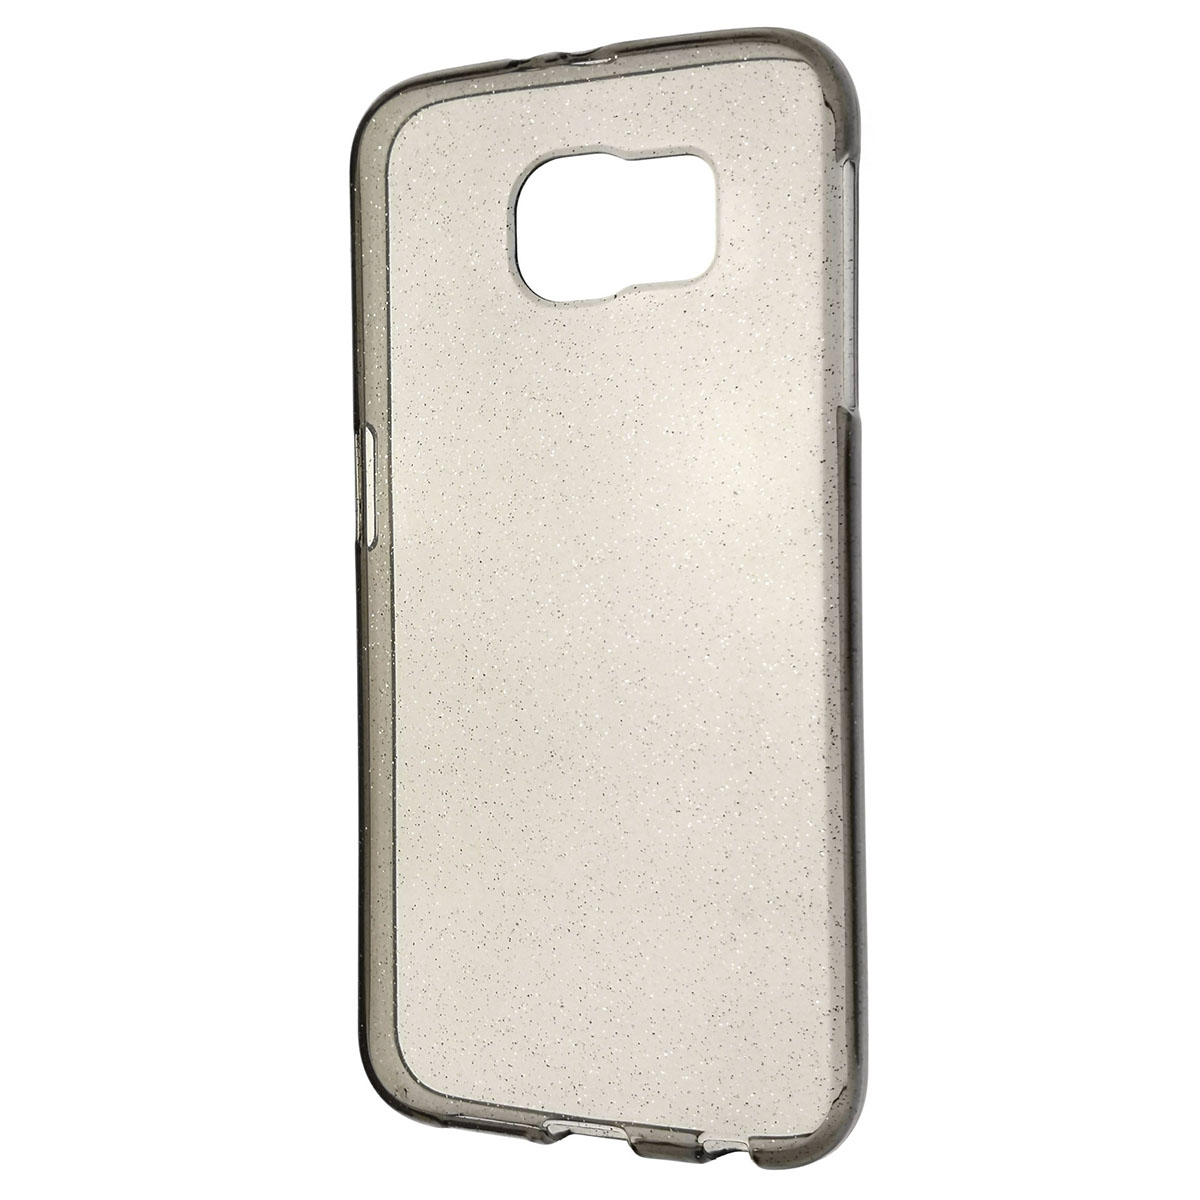 Чехол накладка для SAMSUNG Galaxy S6 (SM-G920), силикон, блестки, цвет тонированный.